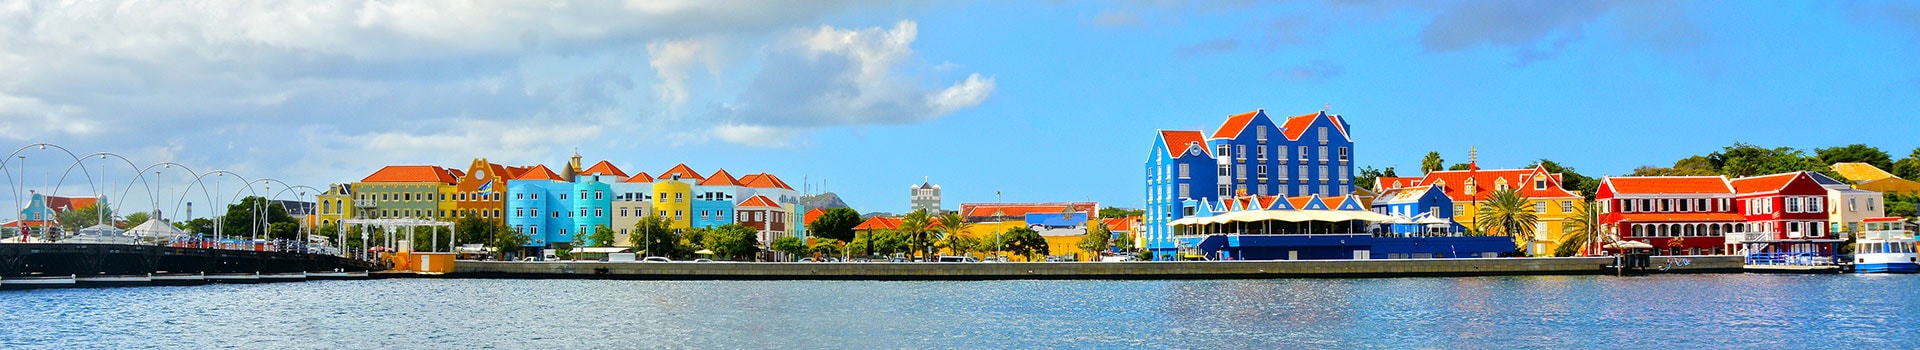 Lissabon - Willemstad